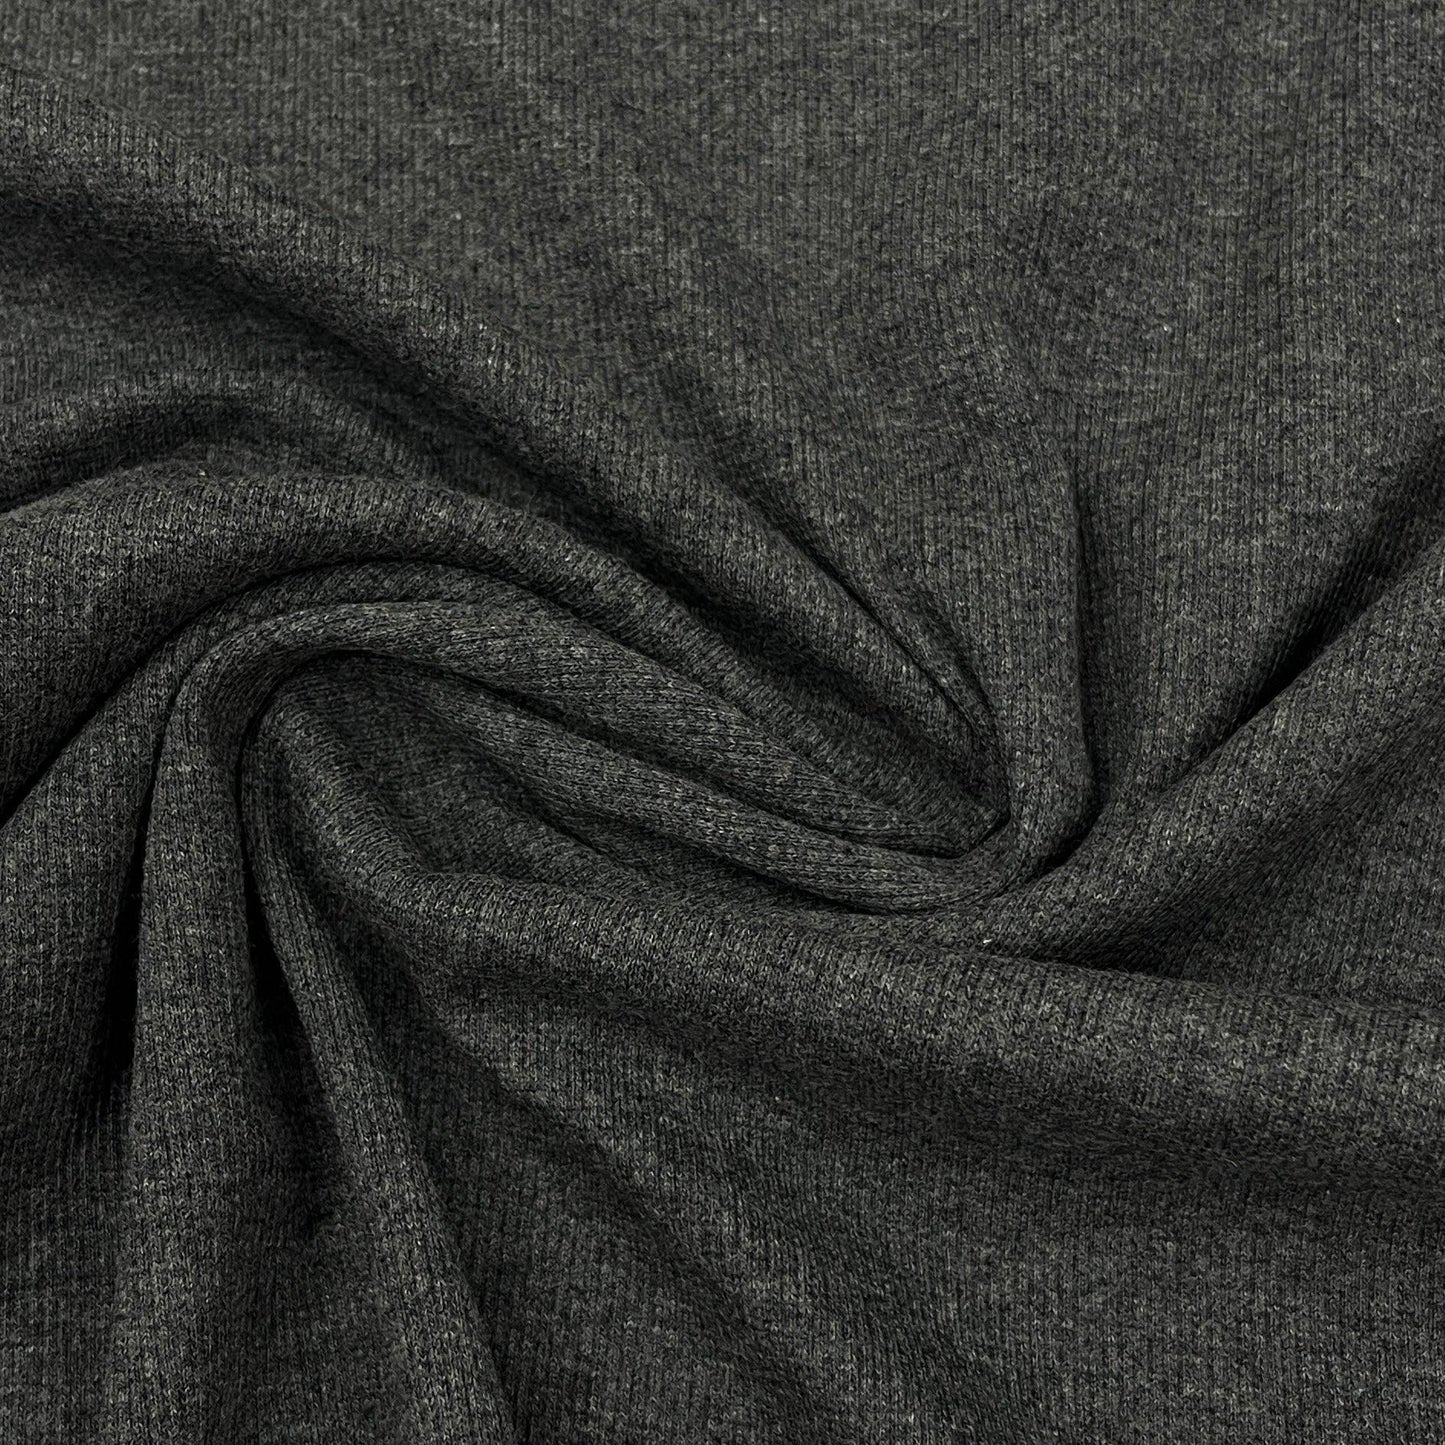 Charcoal Heather 2x2 Organic Cotton Rib Knit Fabric - Nature's Fabrics